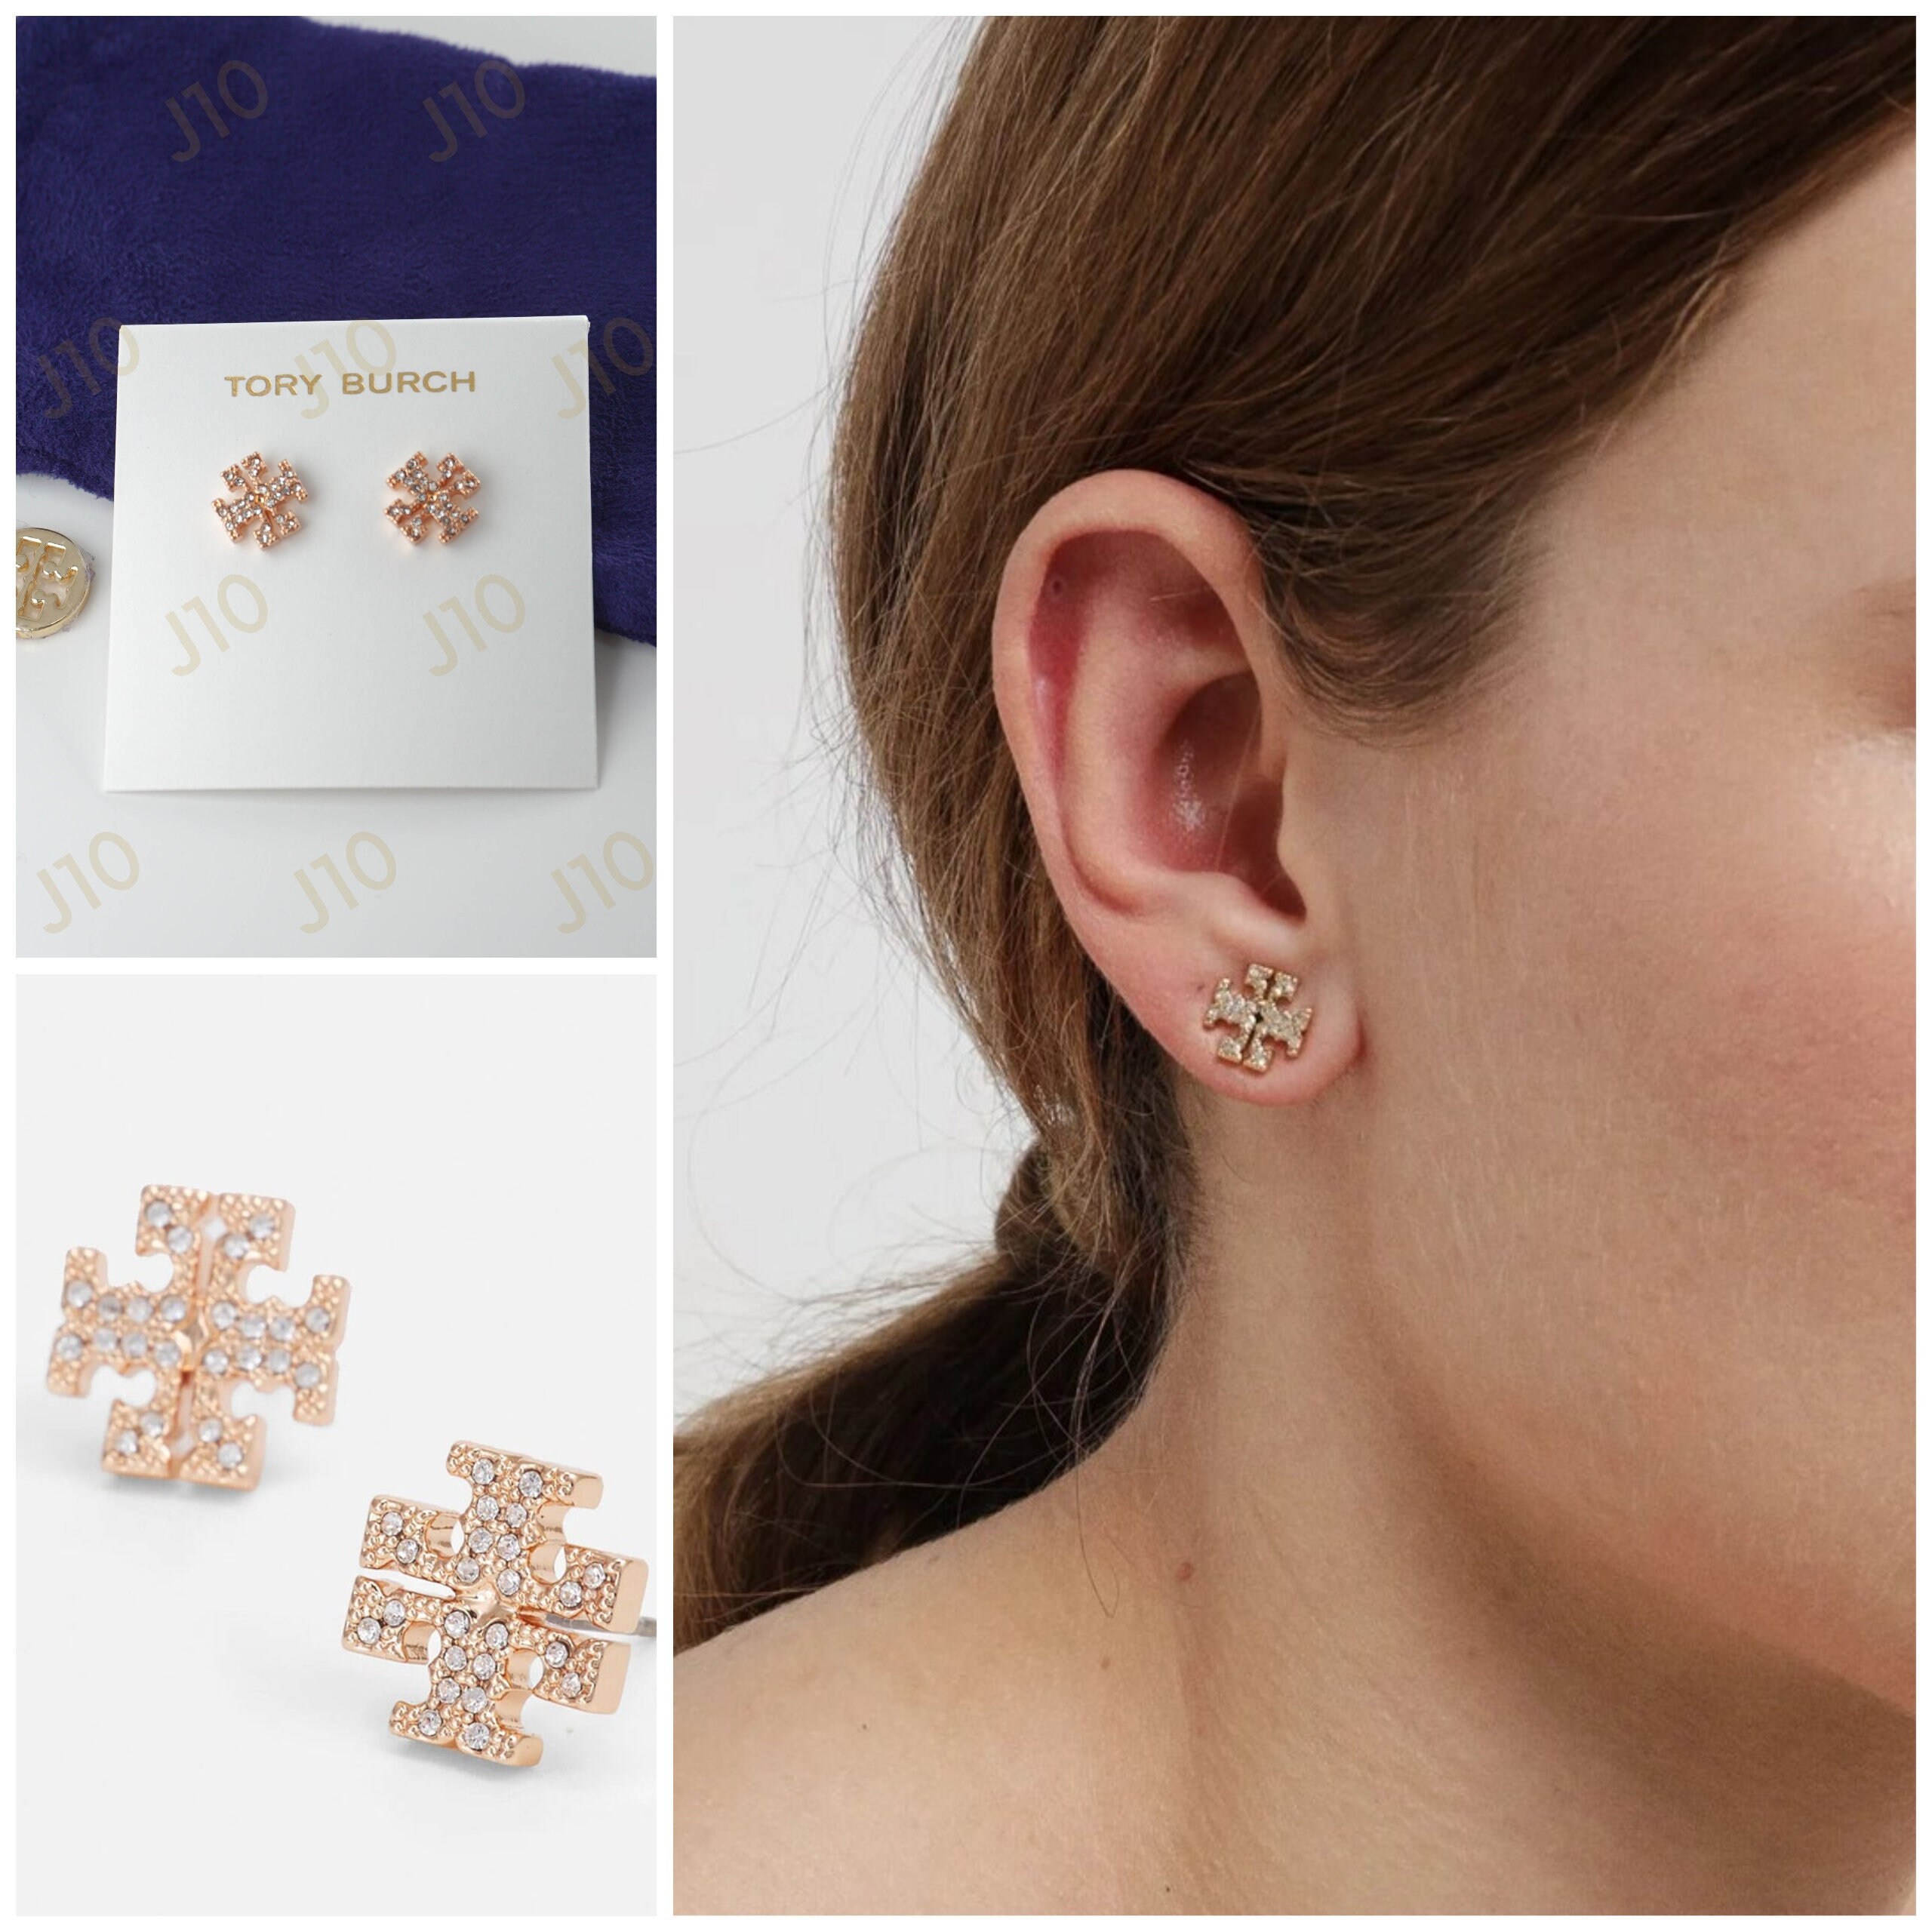 Tory Burch Kira Pavé Stud Earrings in Rose Gold Brand New - Etsy Australia